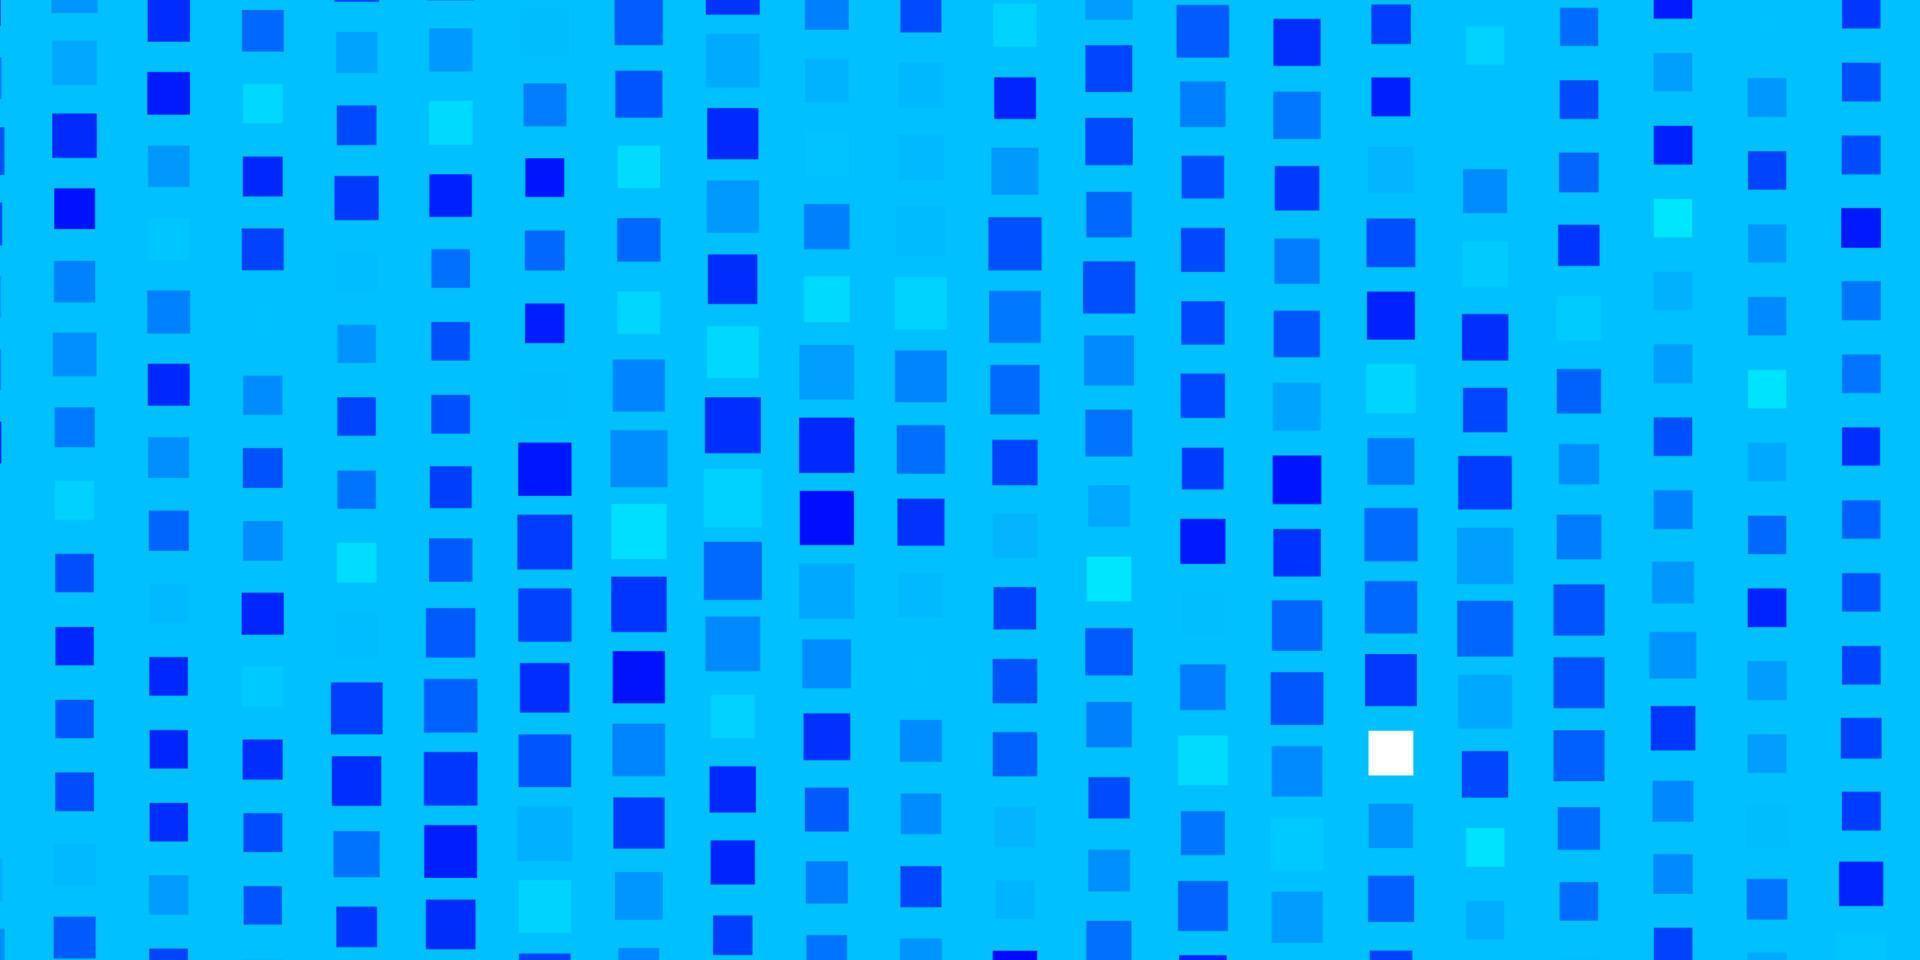 sfondo vettoriale azzurro con rettangoli.